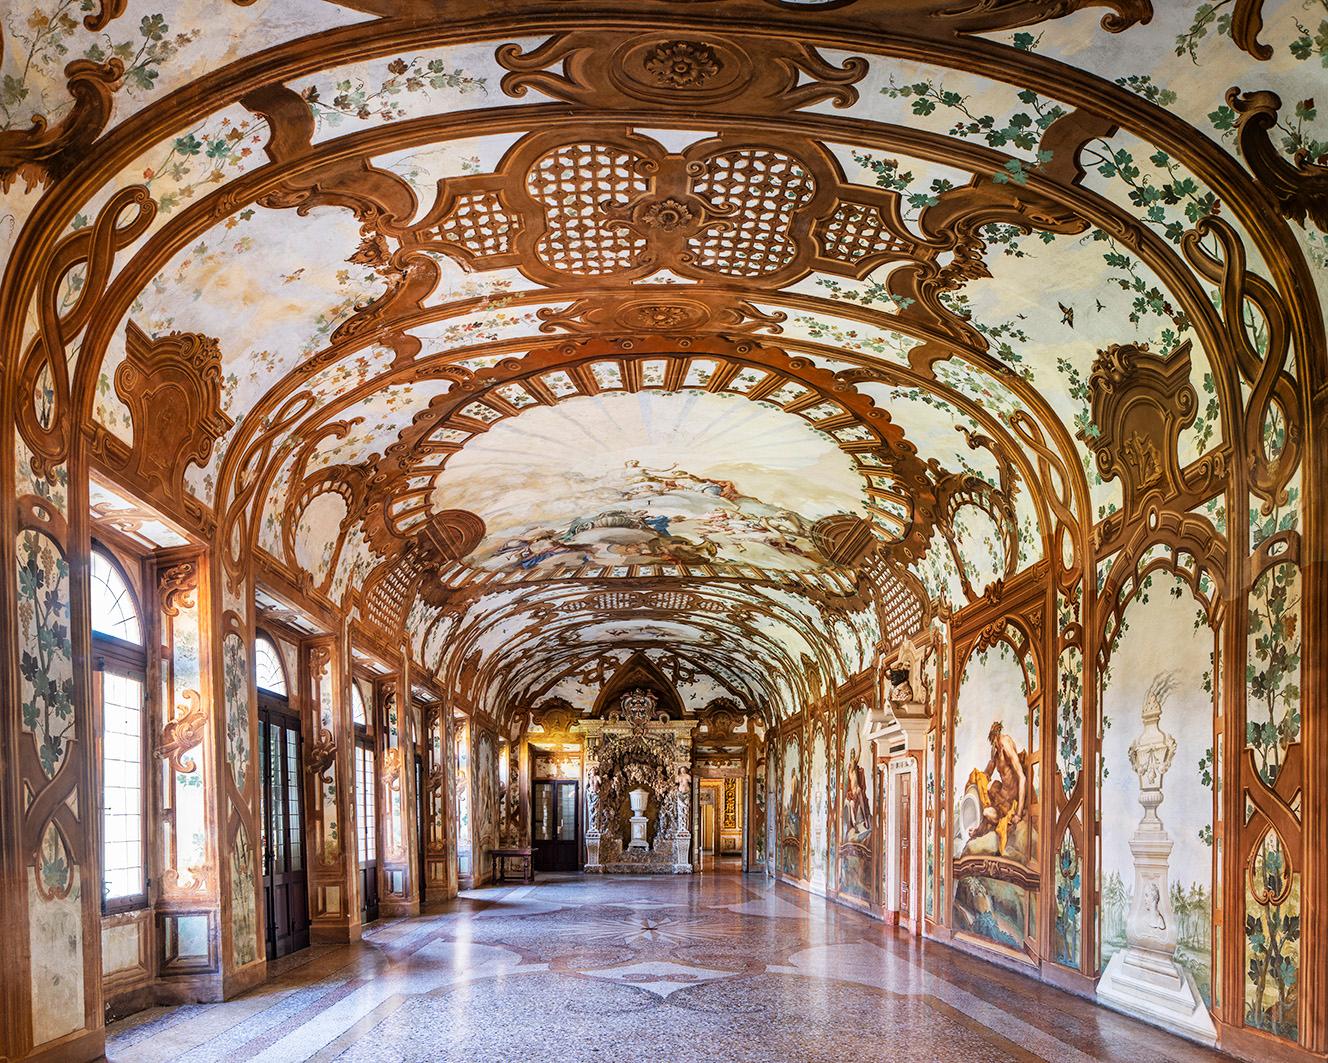 Sala dei Fiumi I (Halle der Flüsse), Herzogspalast von Mantua, Italien